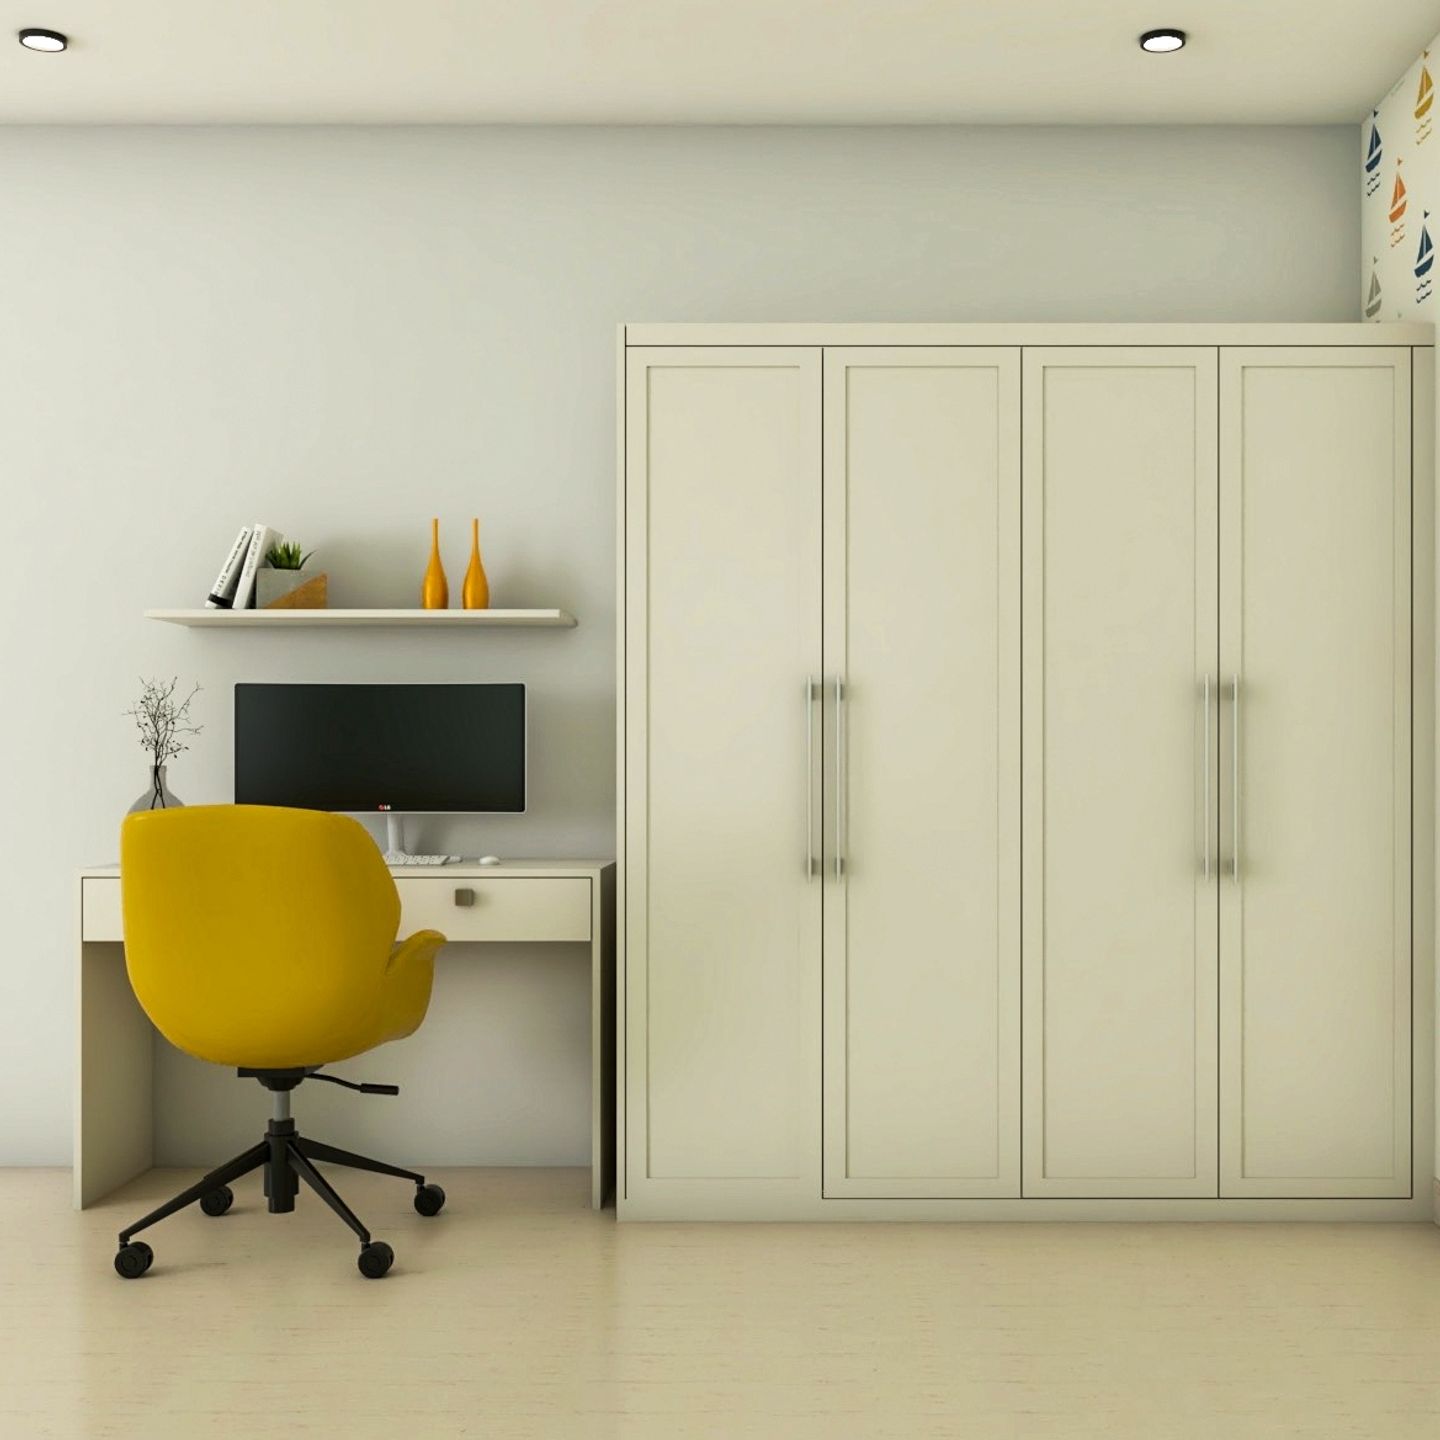 4-Door Off-White Swing Wardrobe Design - Livspace